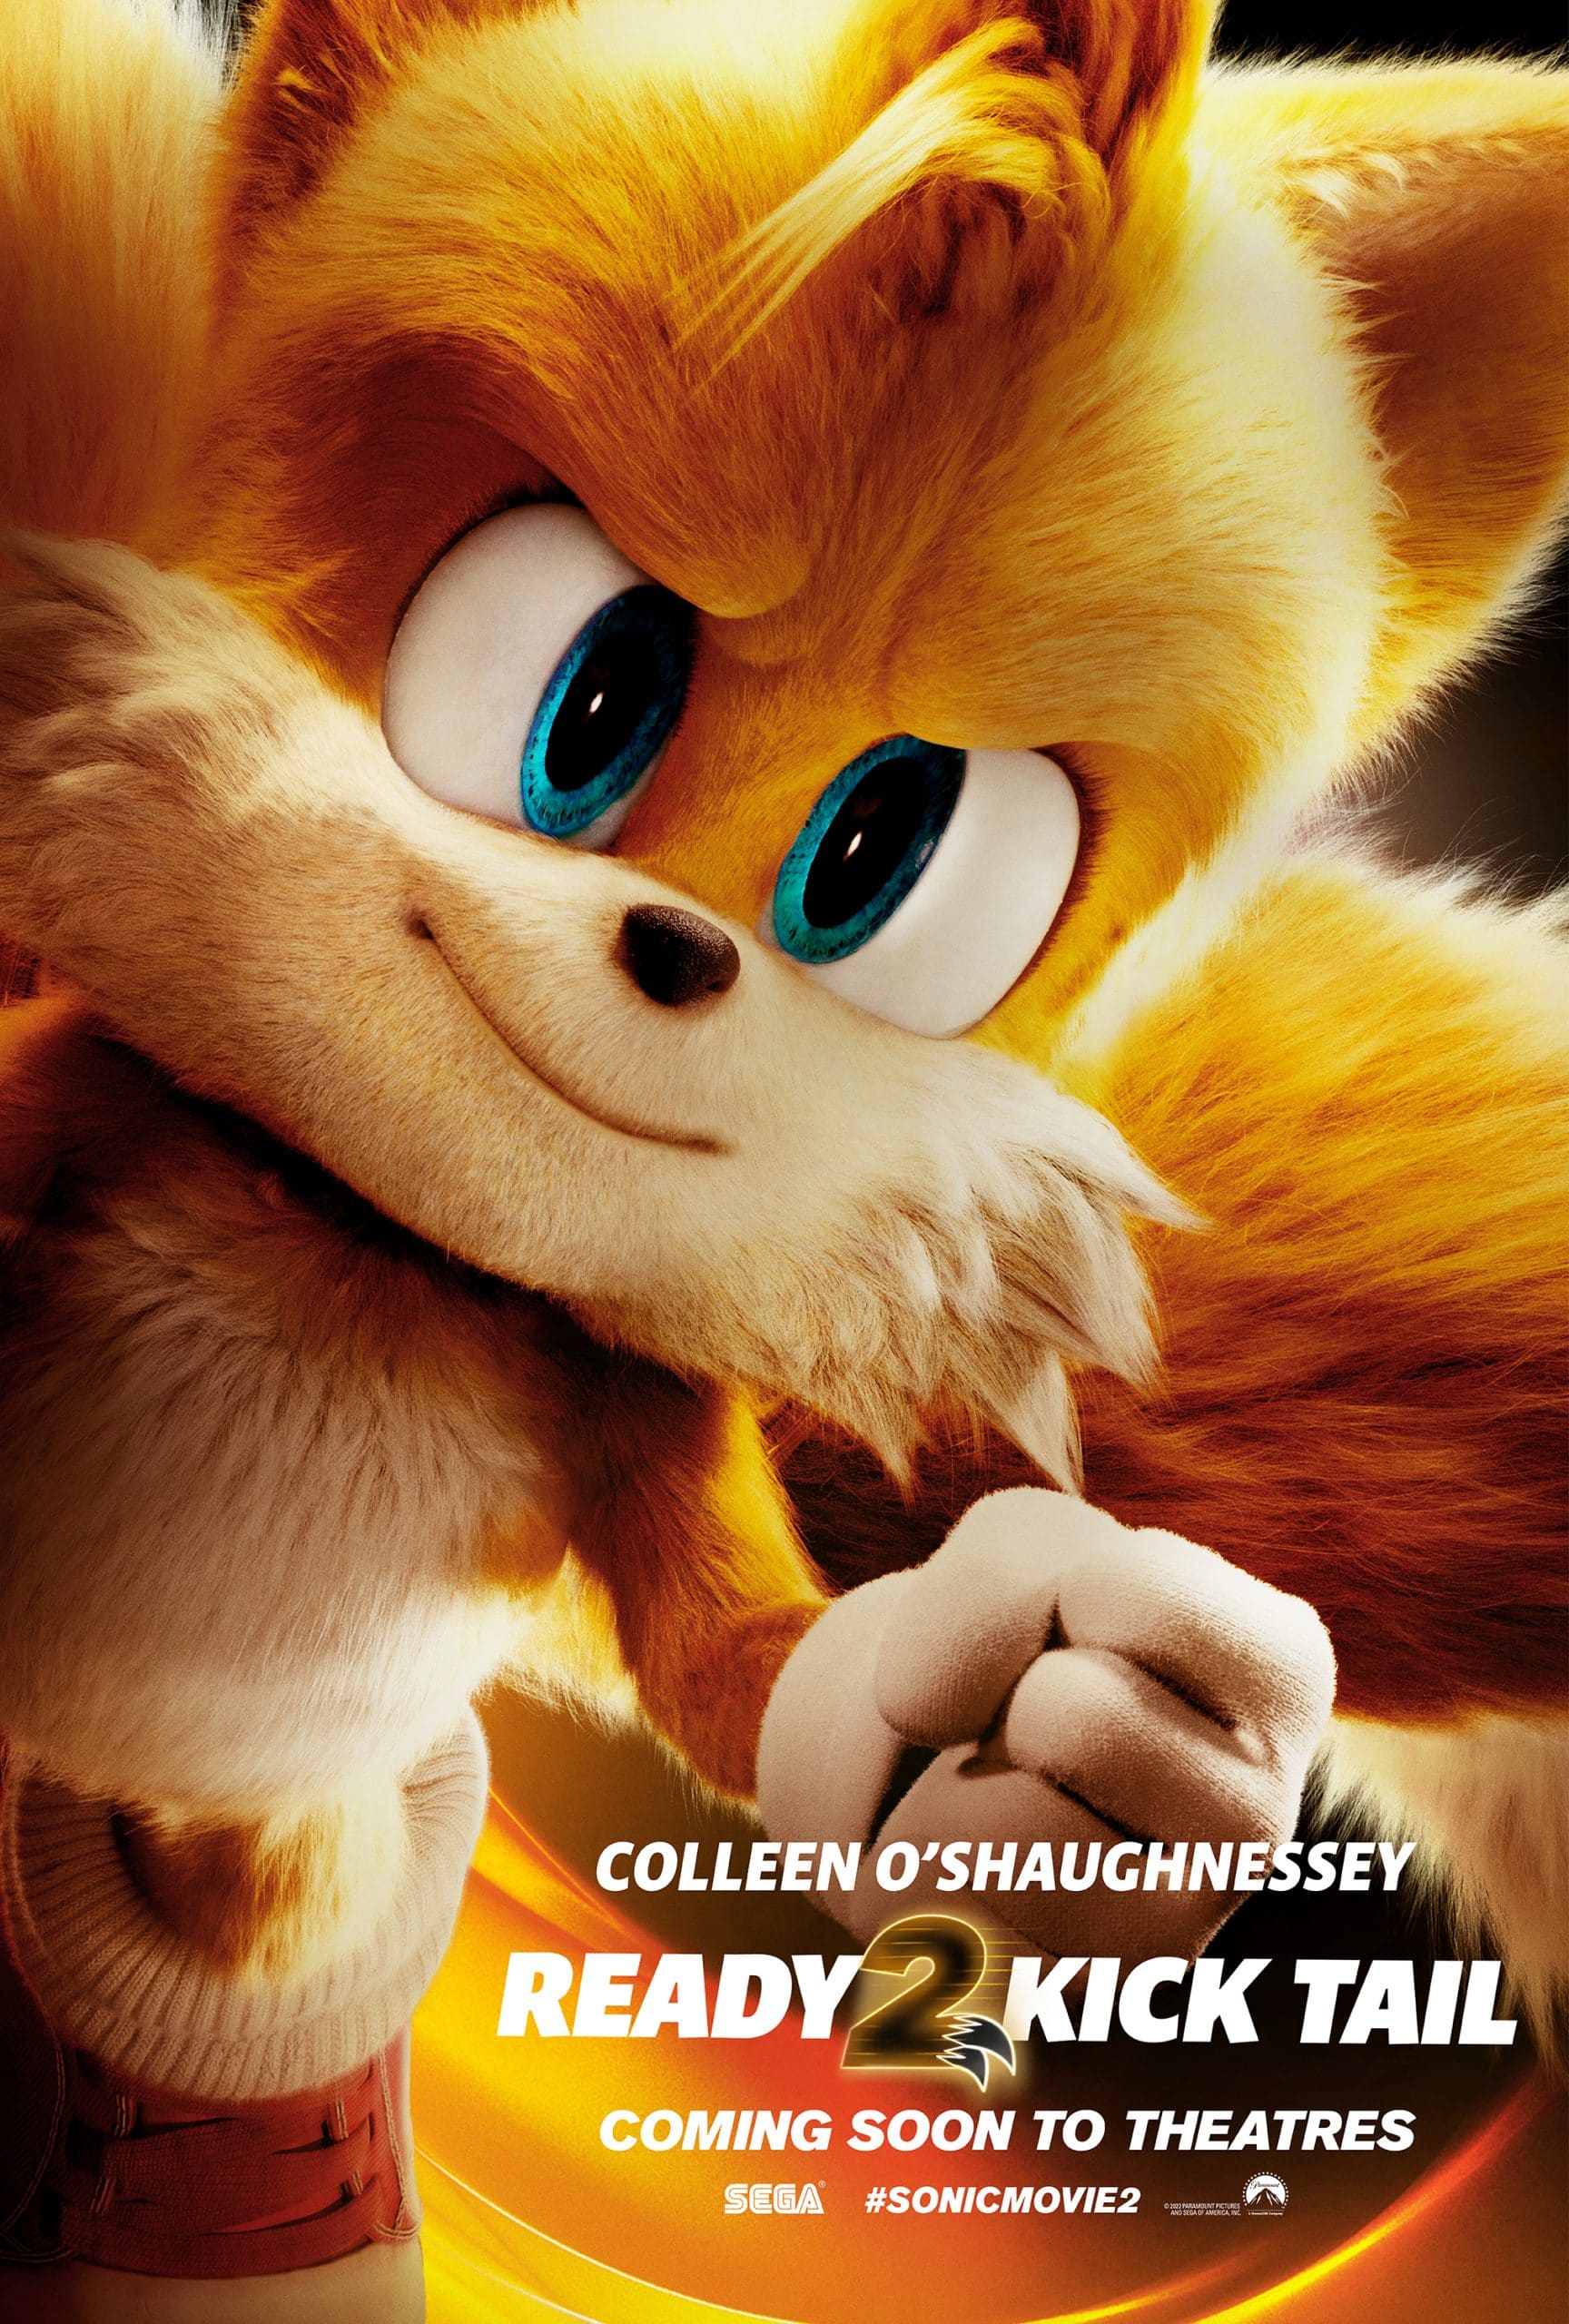 Update or Die! on X: Sonic 2: os novos cartazes Sonic 2 – O Filme, chega 7  de abril nos cinemas  ☻ Updater: Maria da Silva ☆  Categoria: Cinema  /